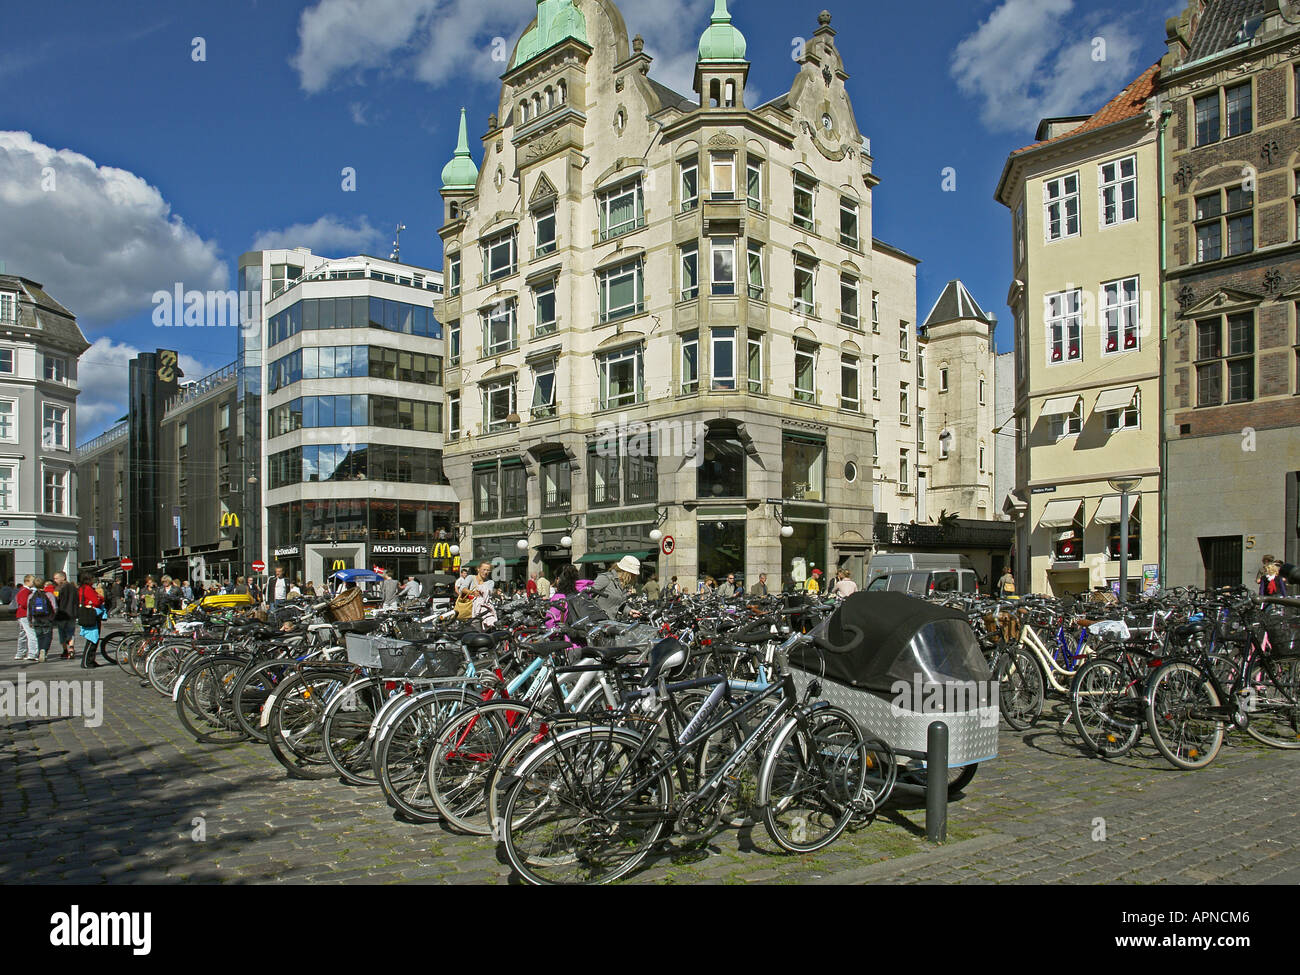 L'extrémité nord de l'Hojbro Plads (carré) de la ville de Copenhague Banque D'Images